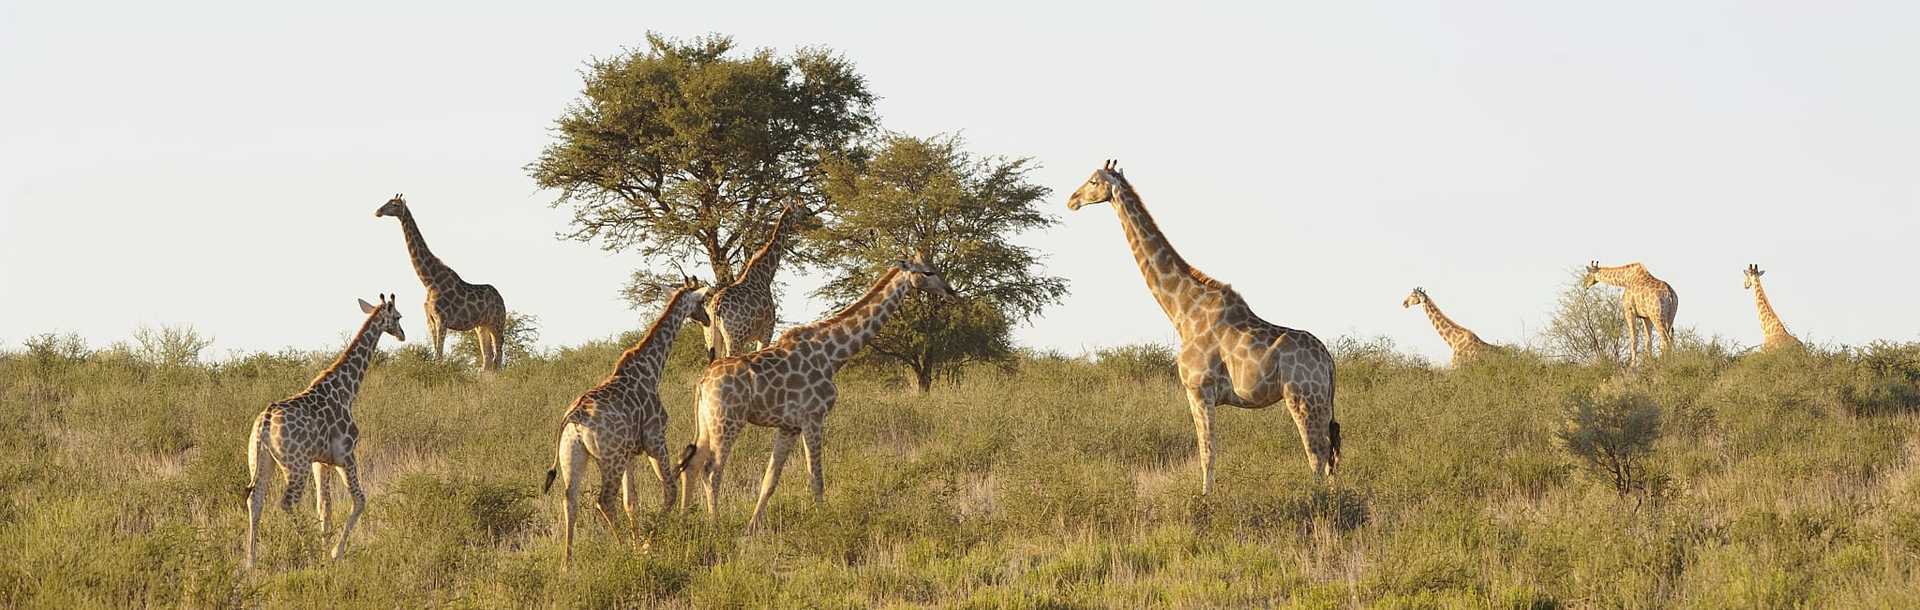 Herd of Giraffe in field in South Africa